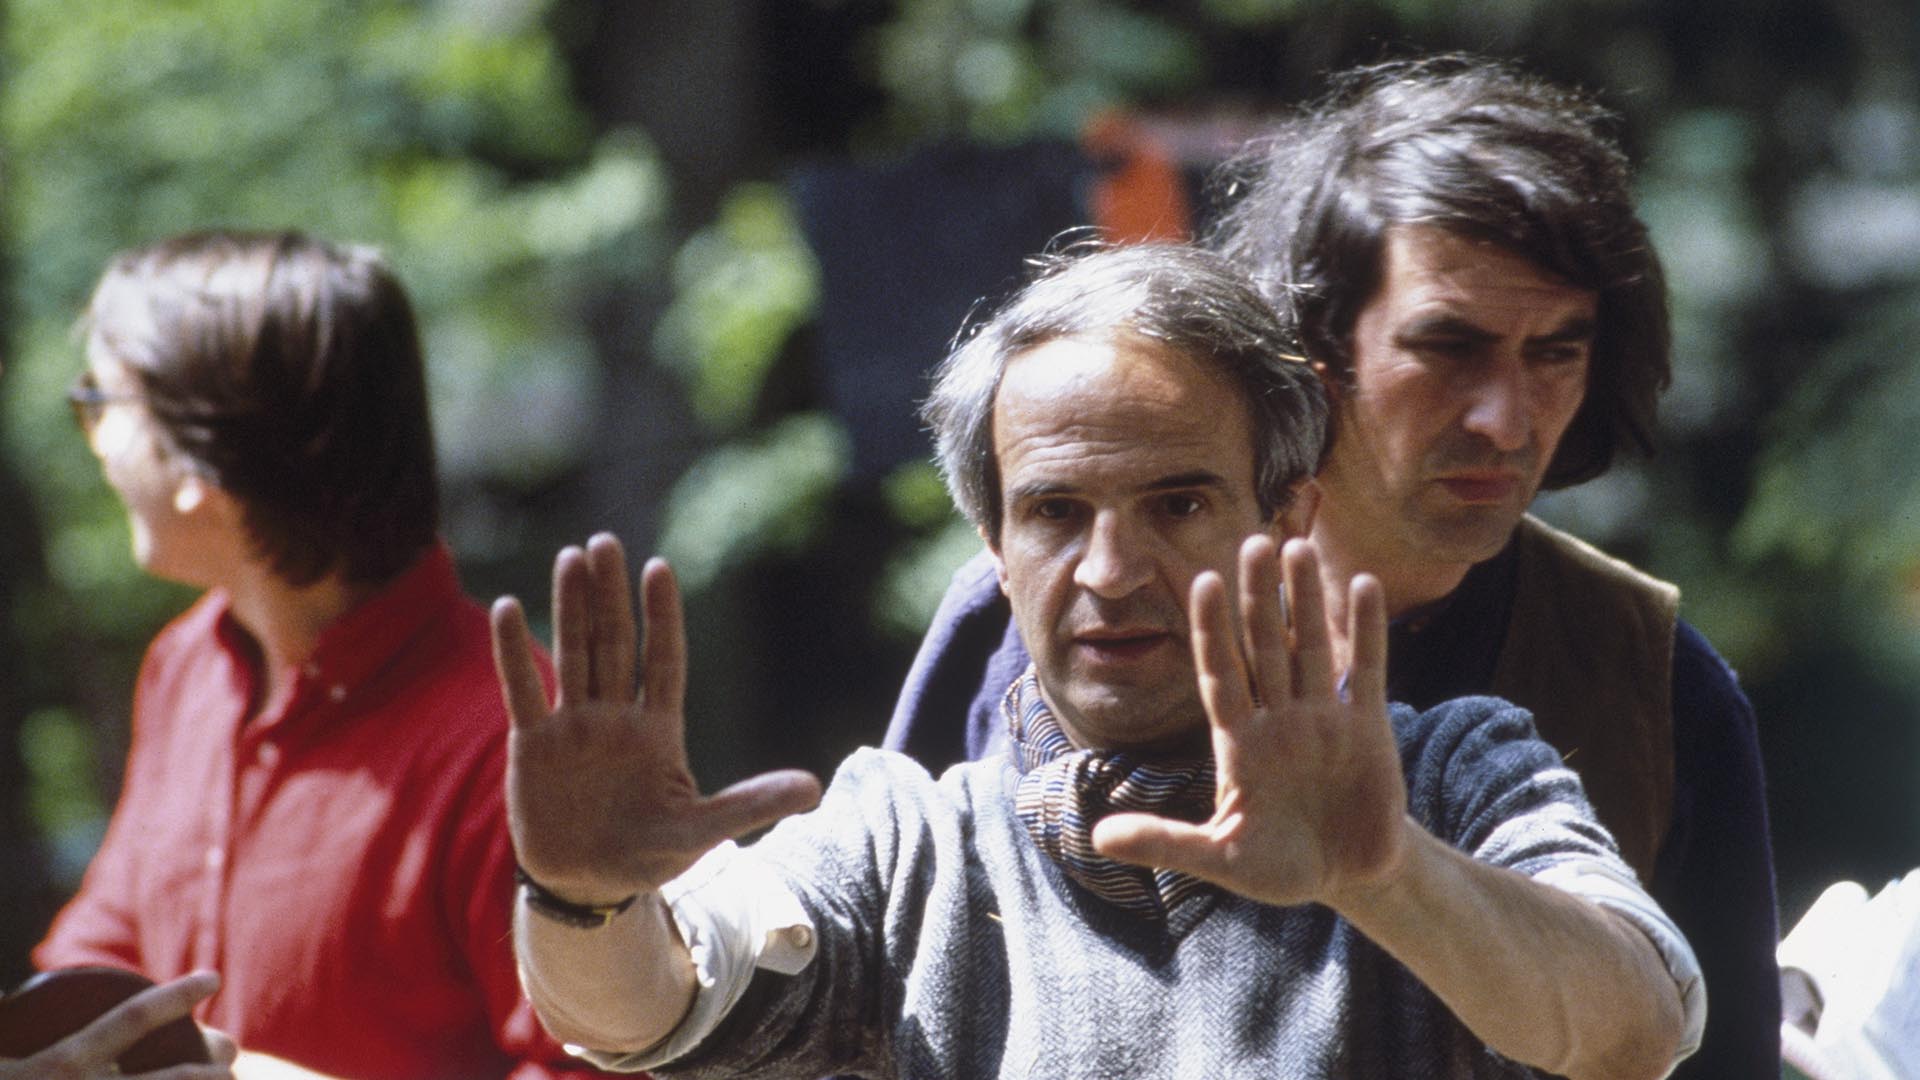 Francia ha ganado dos veces a mejor dirección con Roman Polanski y Michel Hazanavicius. Triet, pese a que tiene muy complicado vencer, ya ha hecho historia al colocarse a la altura de directores de la talla de Jean Renoir, François Truffaut o Louis Malle. 